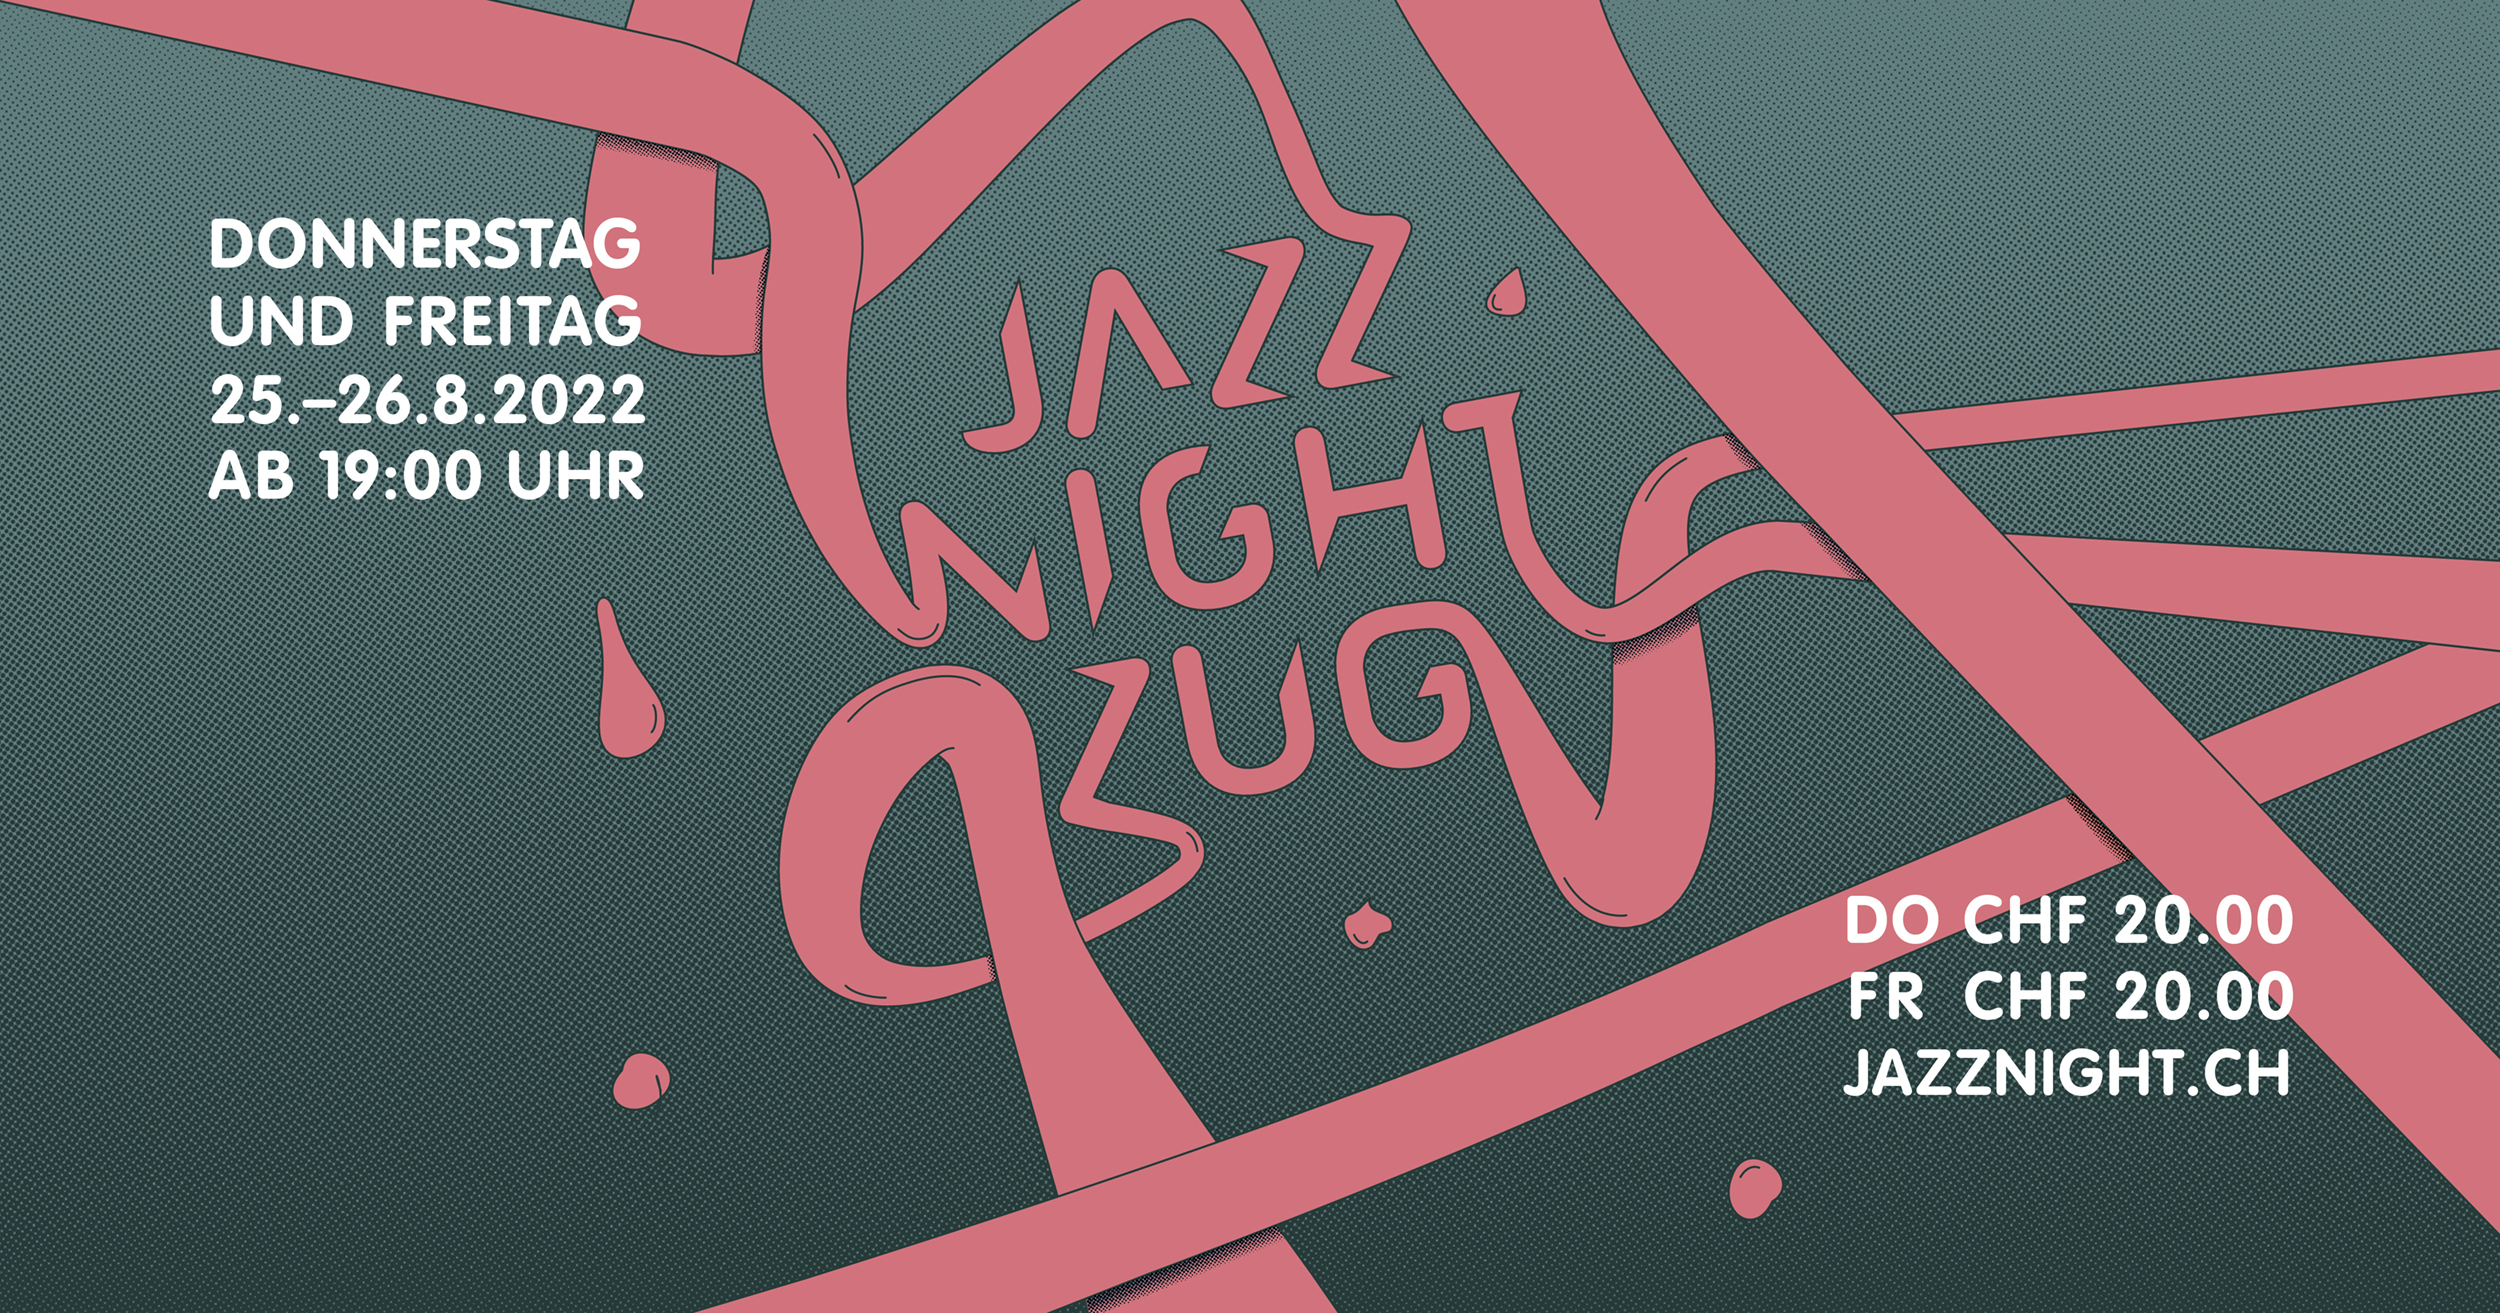 Die 29. Jazz Night 2022 in der Zuger Altstadt – Musikhighlights an zwei Tagen